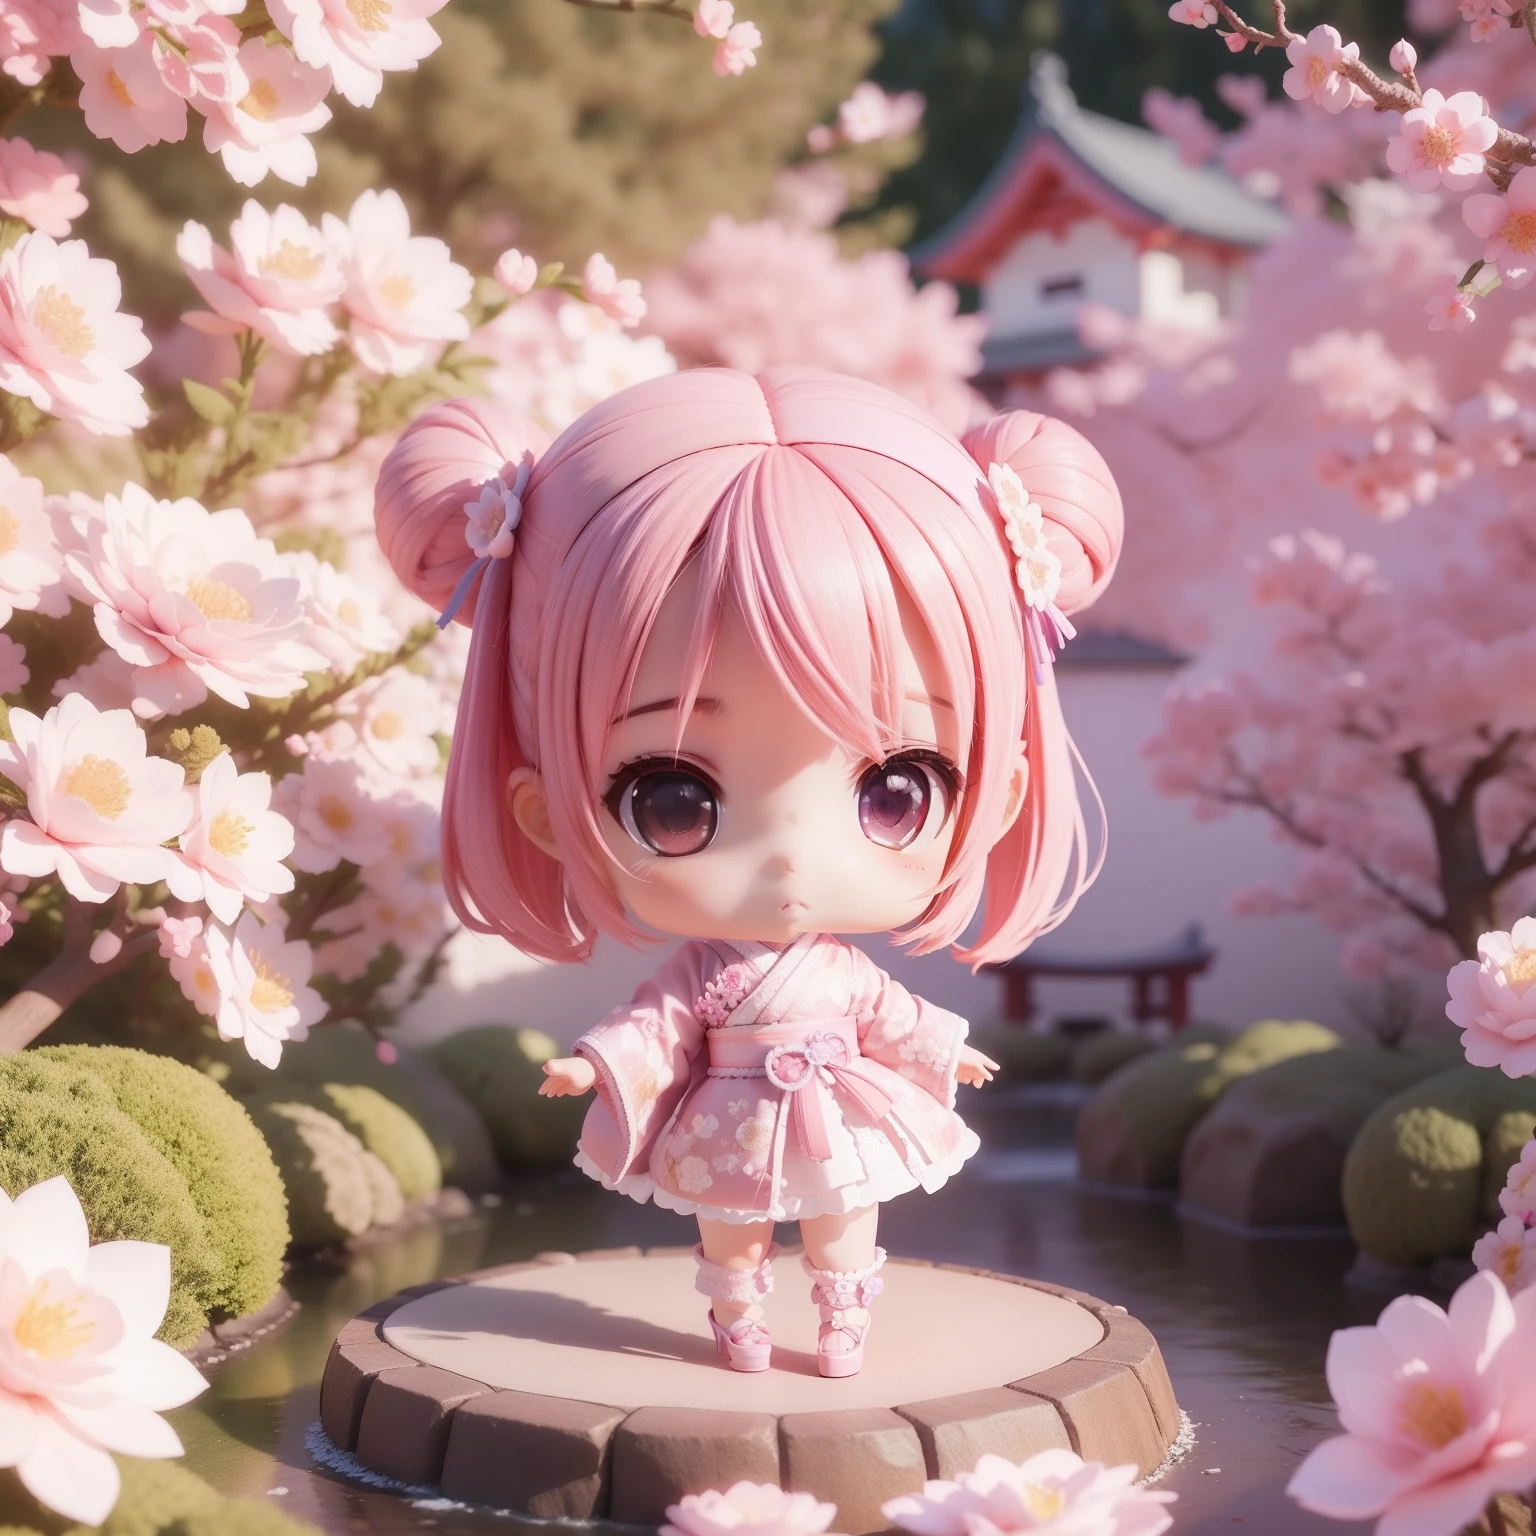 Mignon bébé Chibi Anime,(((Chibis 3D))) (meilleure qualité) (Prix Maître)、Kimono rose et violet、Talons hauts en dentelle blanche avec motif floral tricoté、jardin japonais